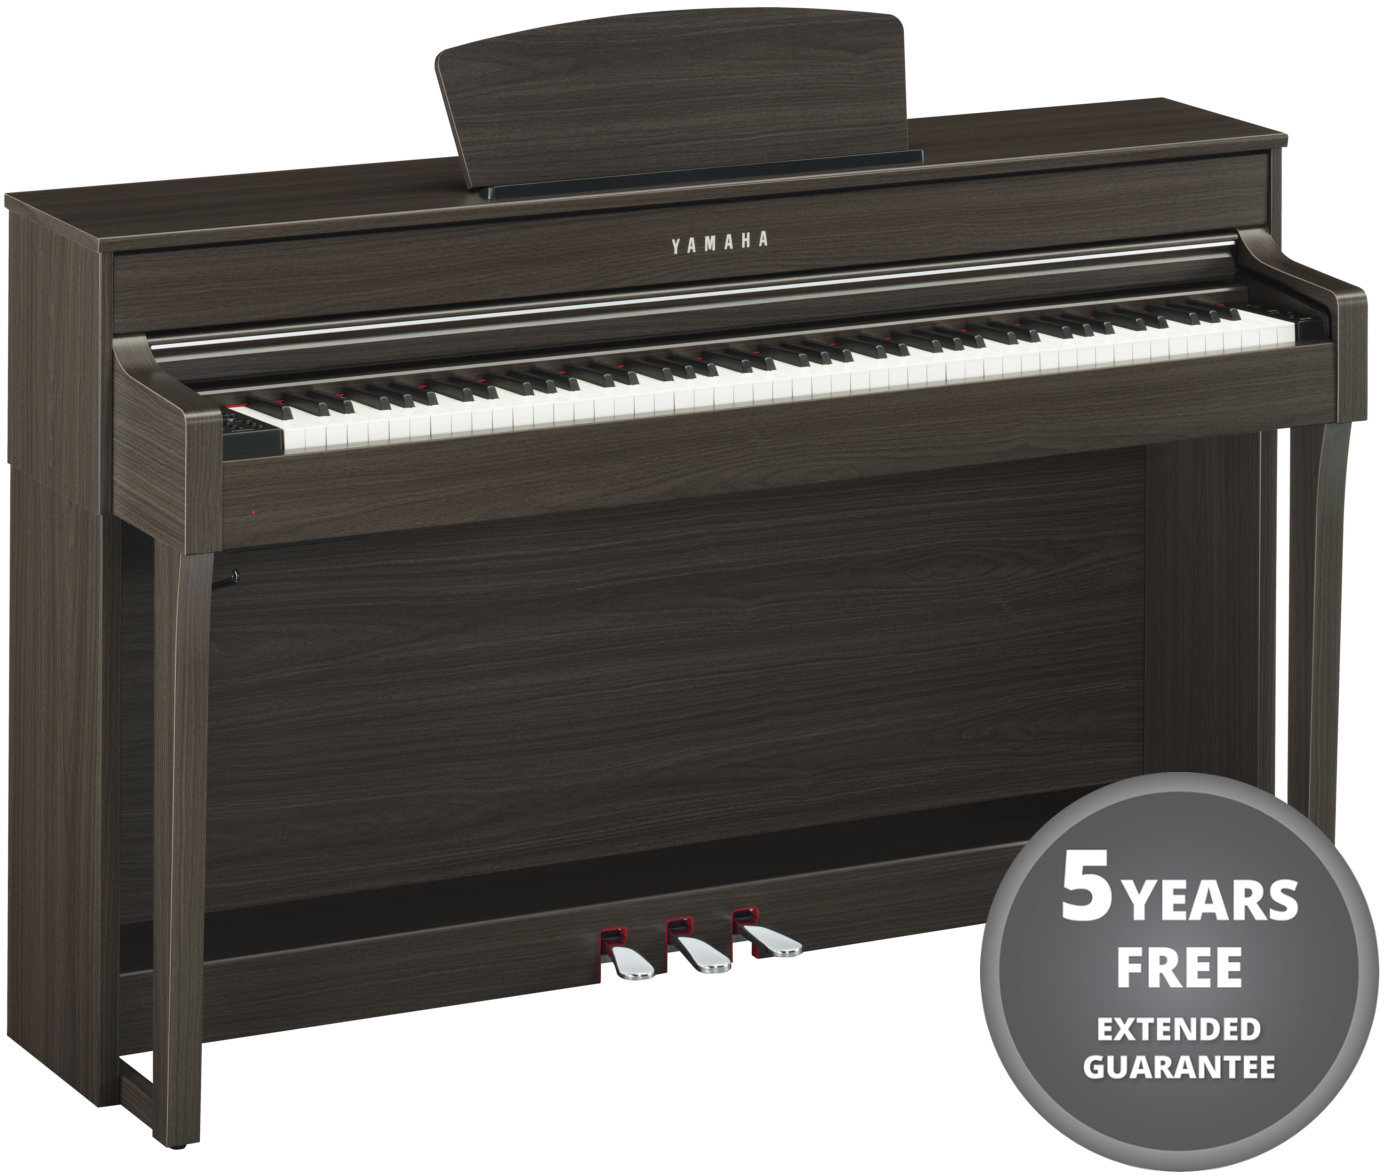 Ψηφιακό Πιάνο Yamaha CLP-635 Σκούρο ξύλο καρυδιάς Ψηφιακό Πιάνο